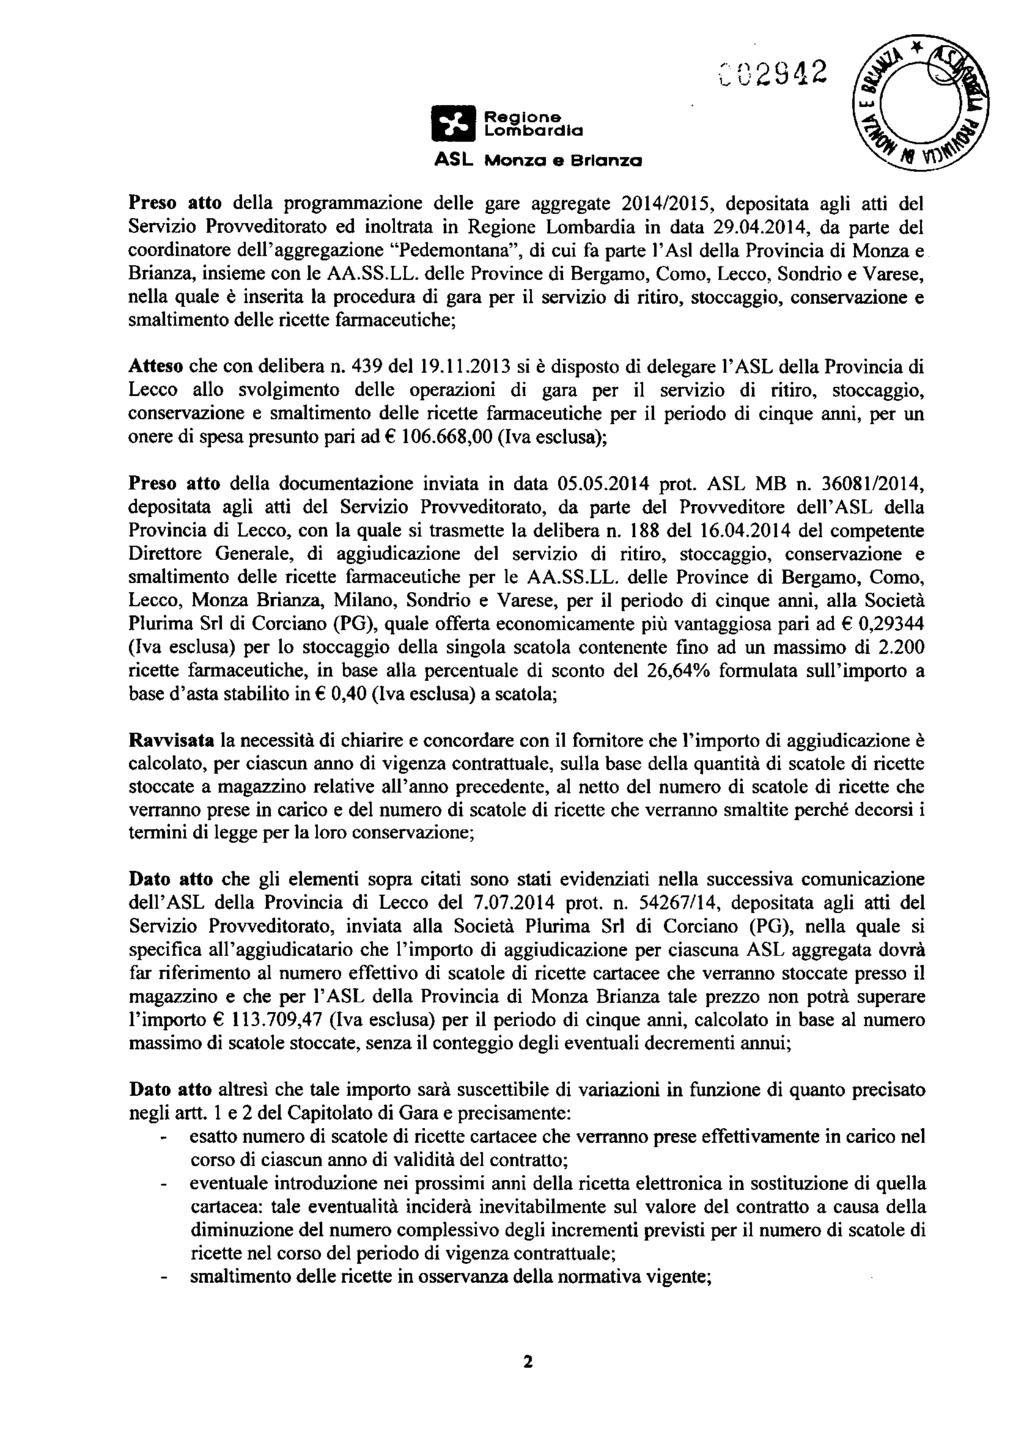 Preso atto della programmazione delle gare aggregate 2014/2015, depositata agli atti del Servizio Provveditorato ed inoltrata in Regione Lombardia in data 29.04.